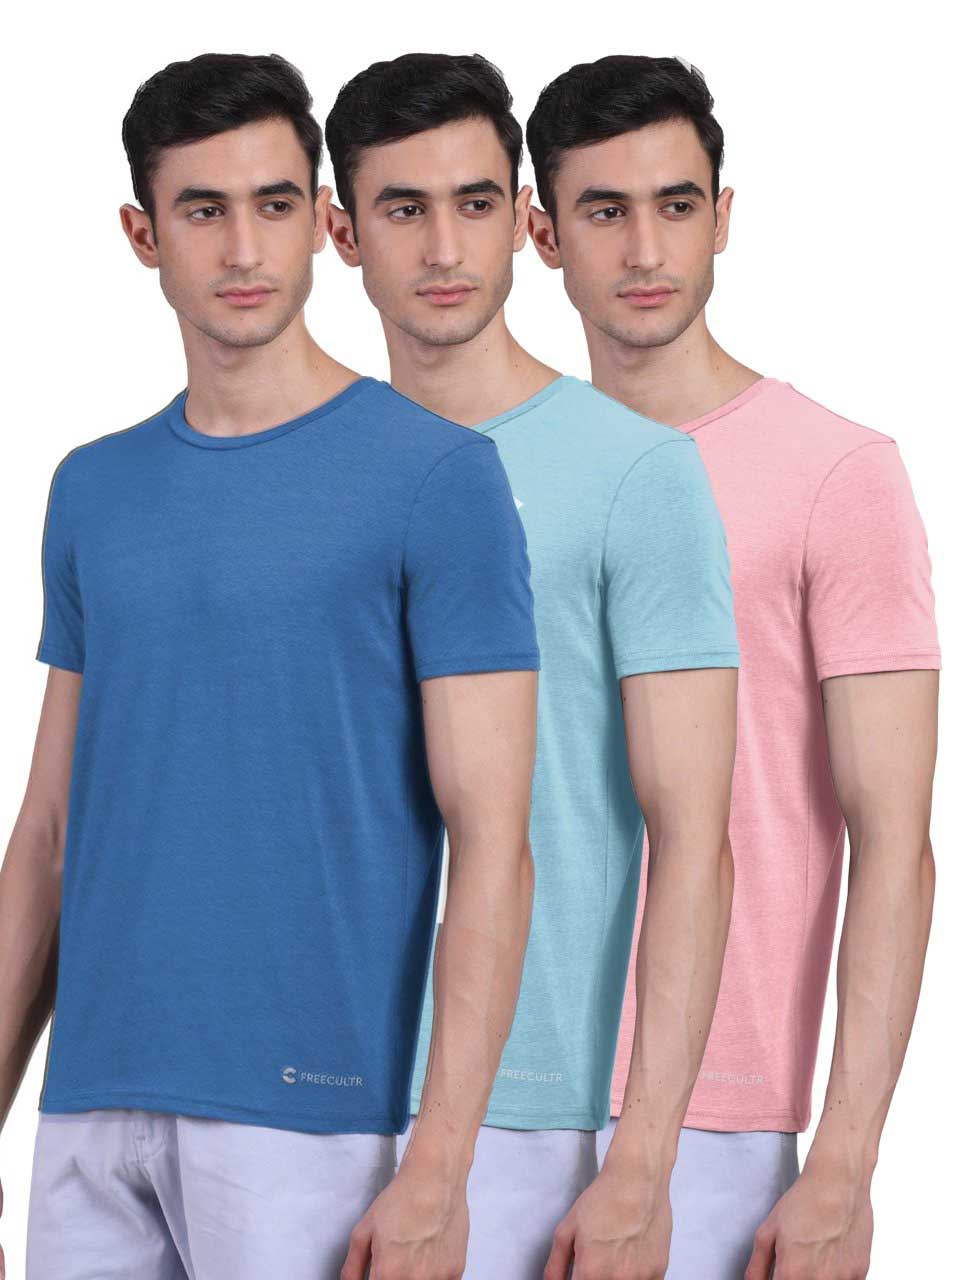 Men's Half Sleeves Bamboo Undershirts (Loungewear & Sleepwear) - Pack of 3